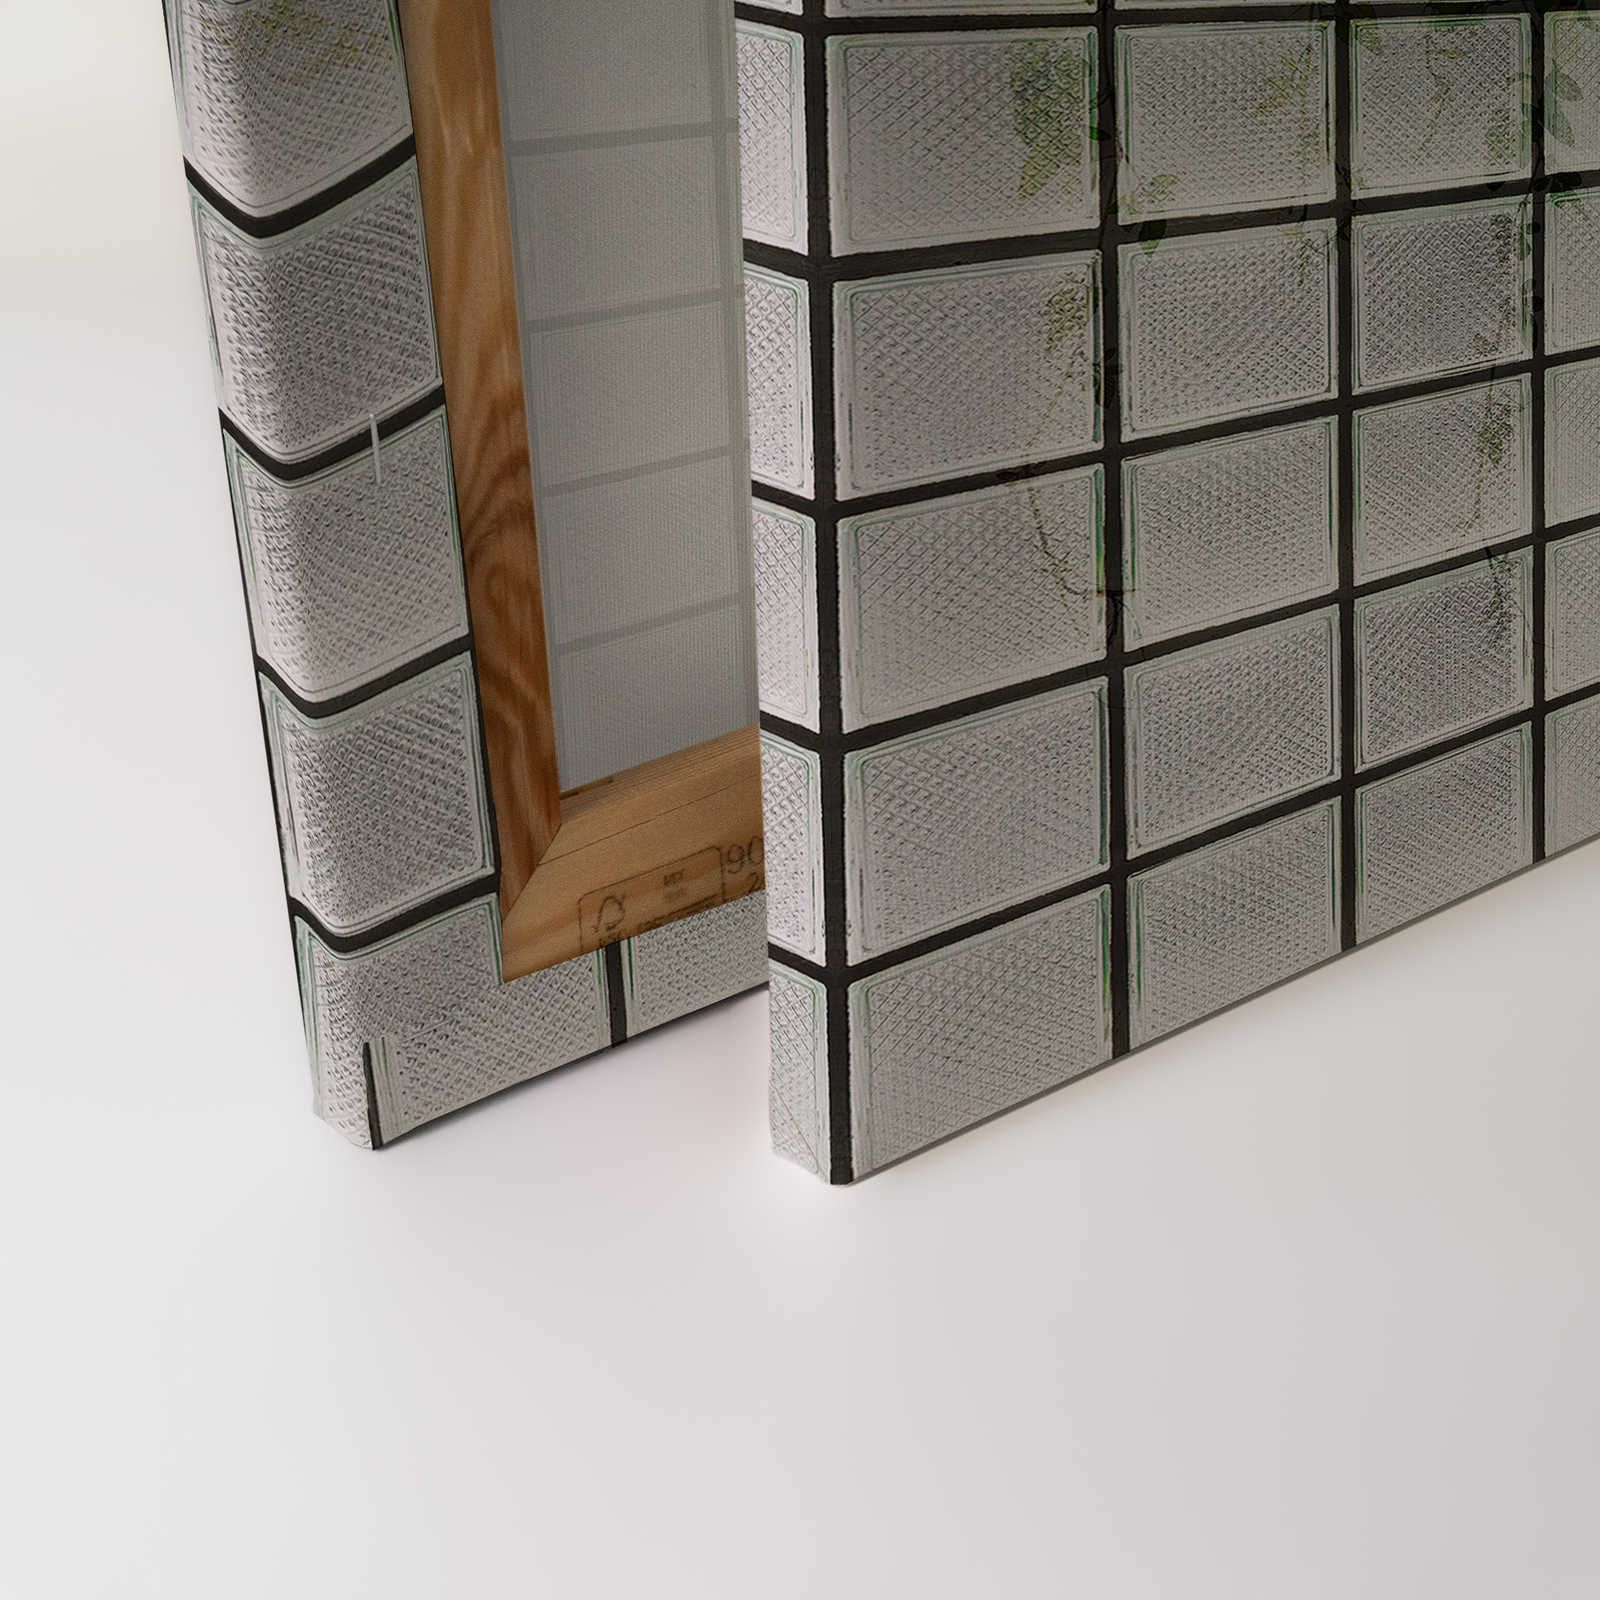             Green House 2 - Invernadero Lienzo pintura Hojas y ladrillos de vidrio - 0,90 m x 0,60 m
        